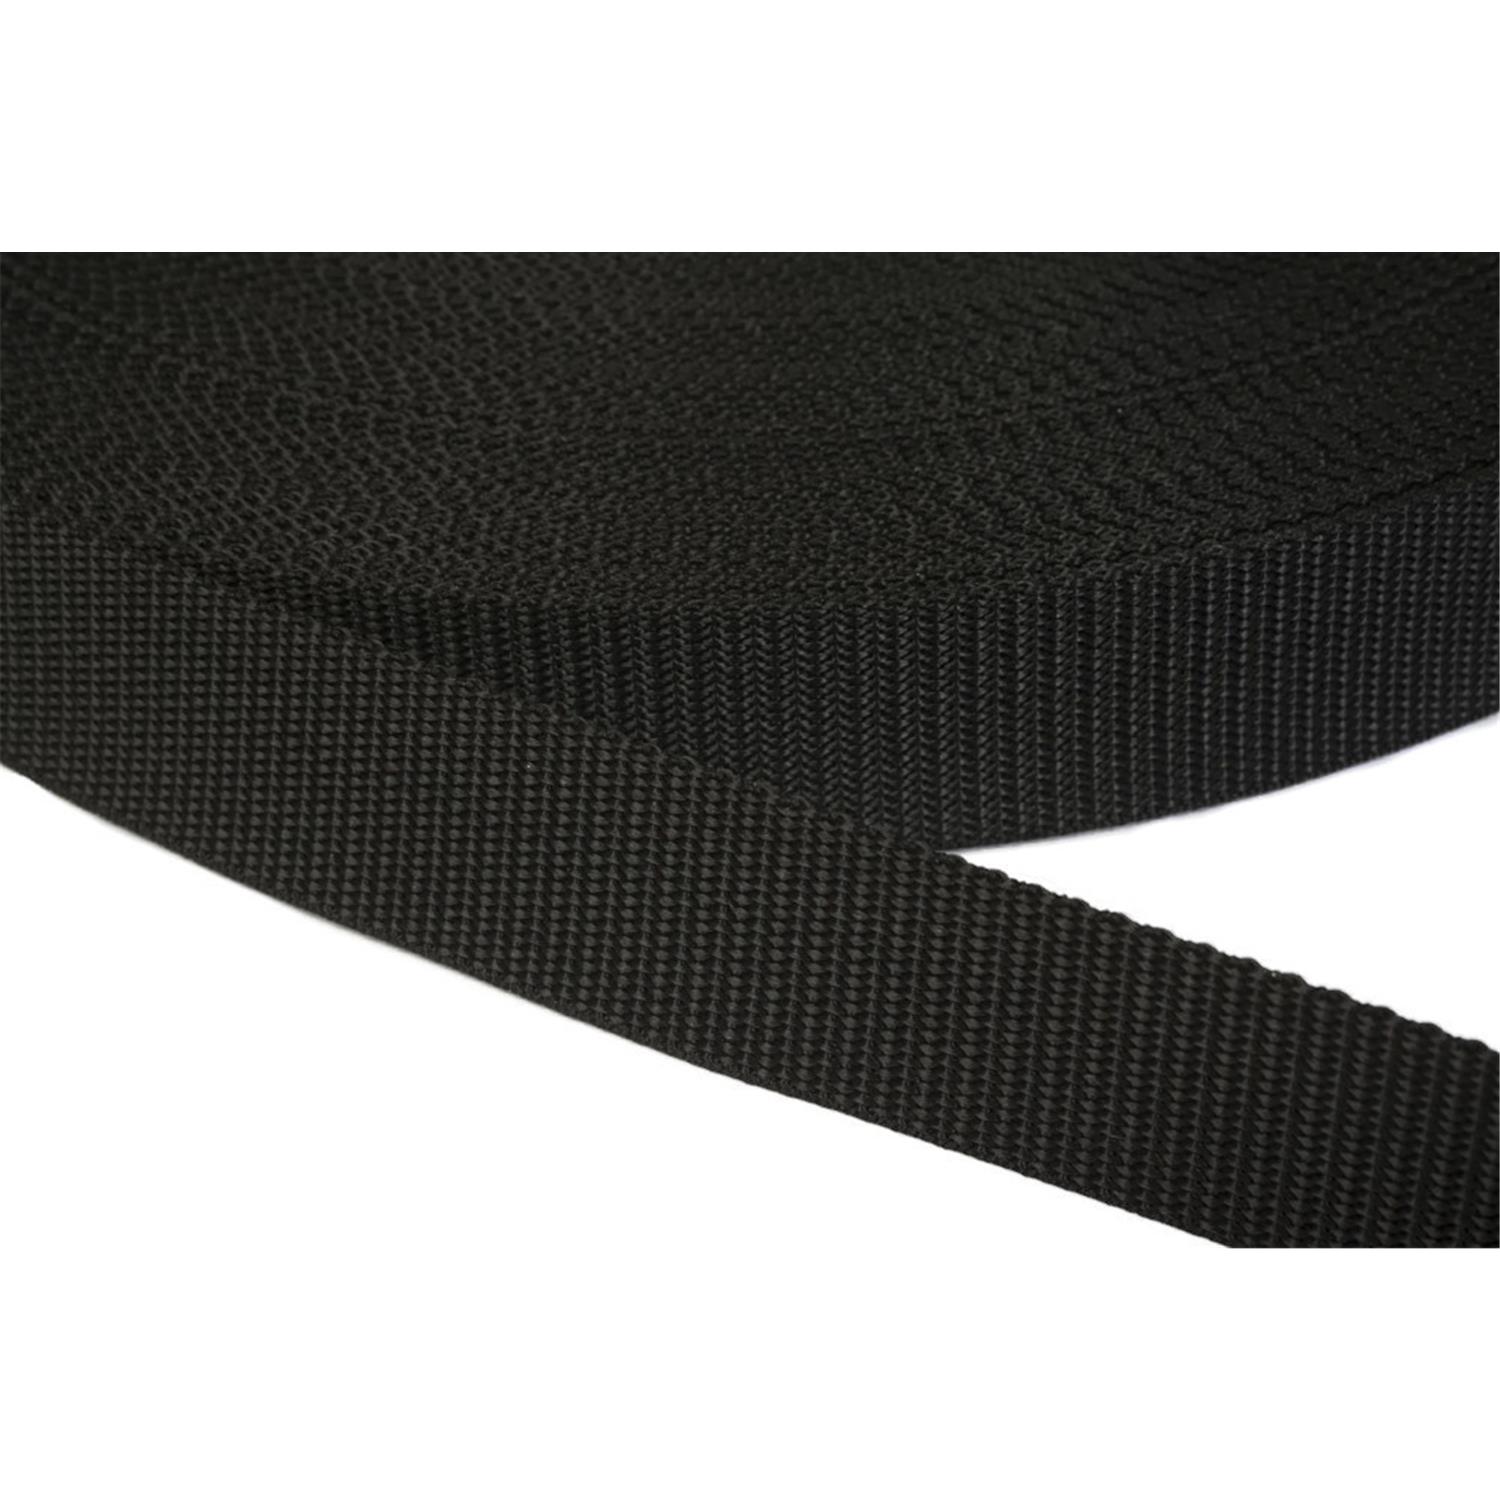 Gurtband 50mm breit aus Polypropylen in 41 Farben 41 - schwarz 6 Meter